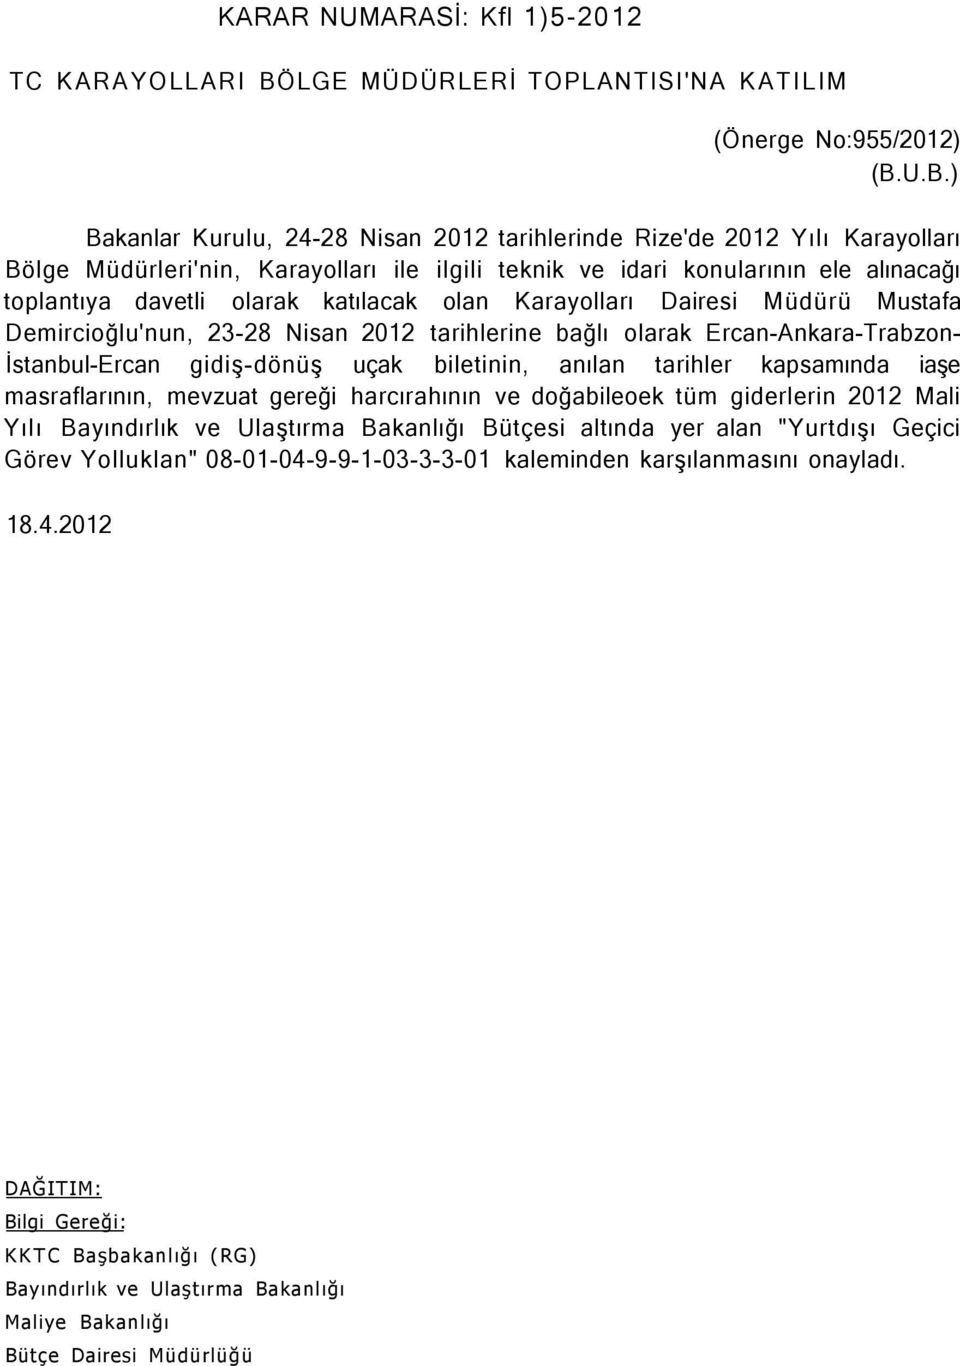 U.B.) Bakanlar Kurulu, 24-28 Nisan 2012 tarihlerinde Rize'de 2012 Yılı Karayolları Bölge Müdürleri'nin, Karayolları ile ilgili teknik ve idari konularının ele alınacağı toplantıya davetli olarak